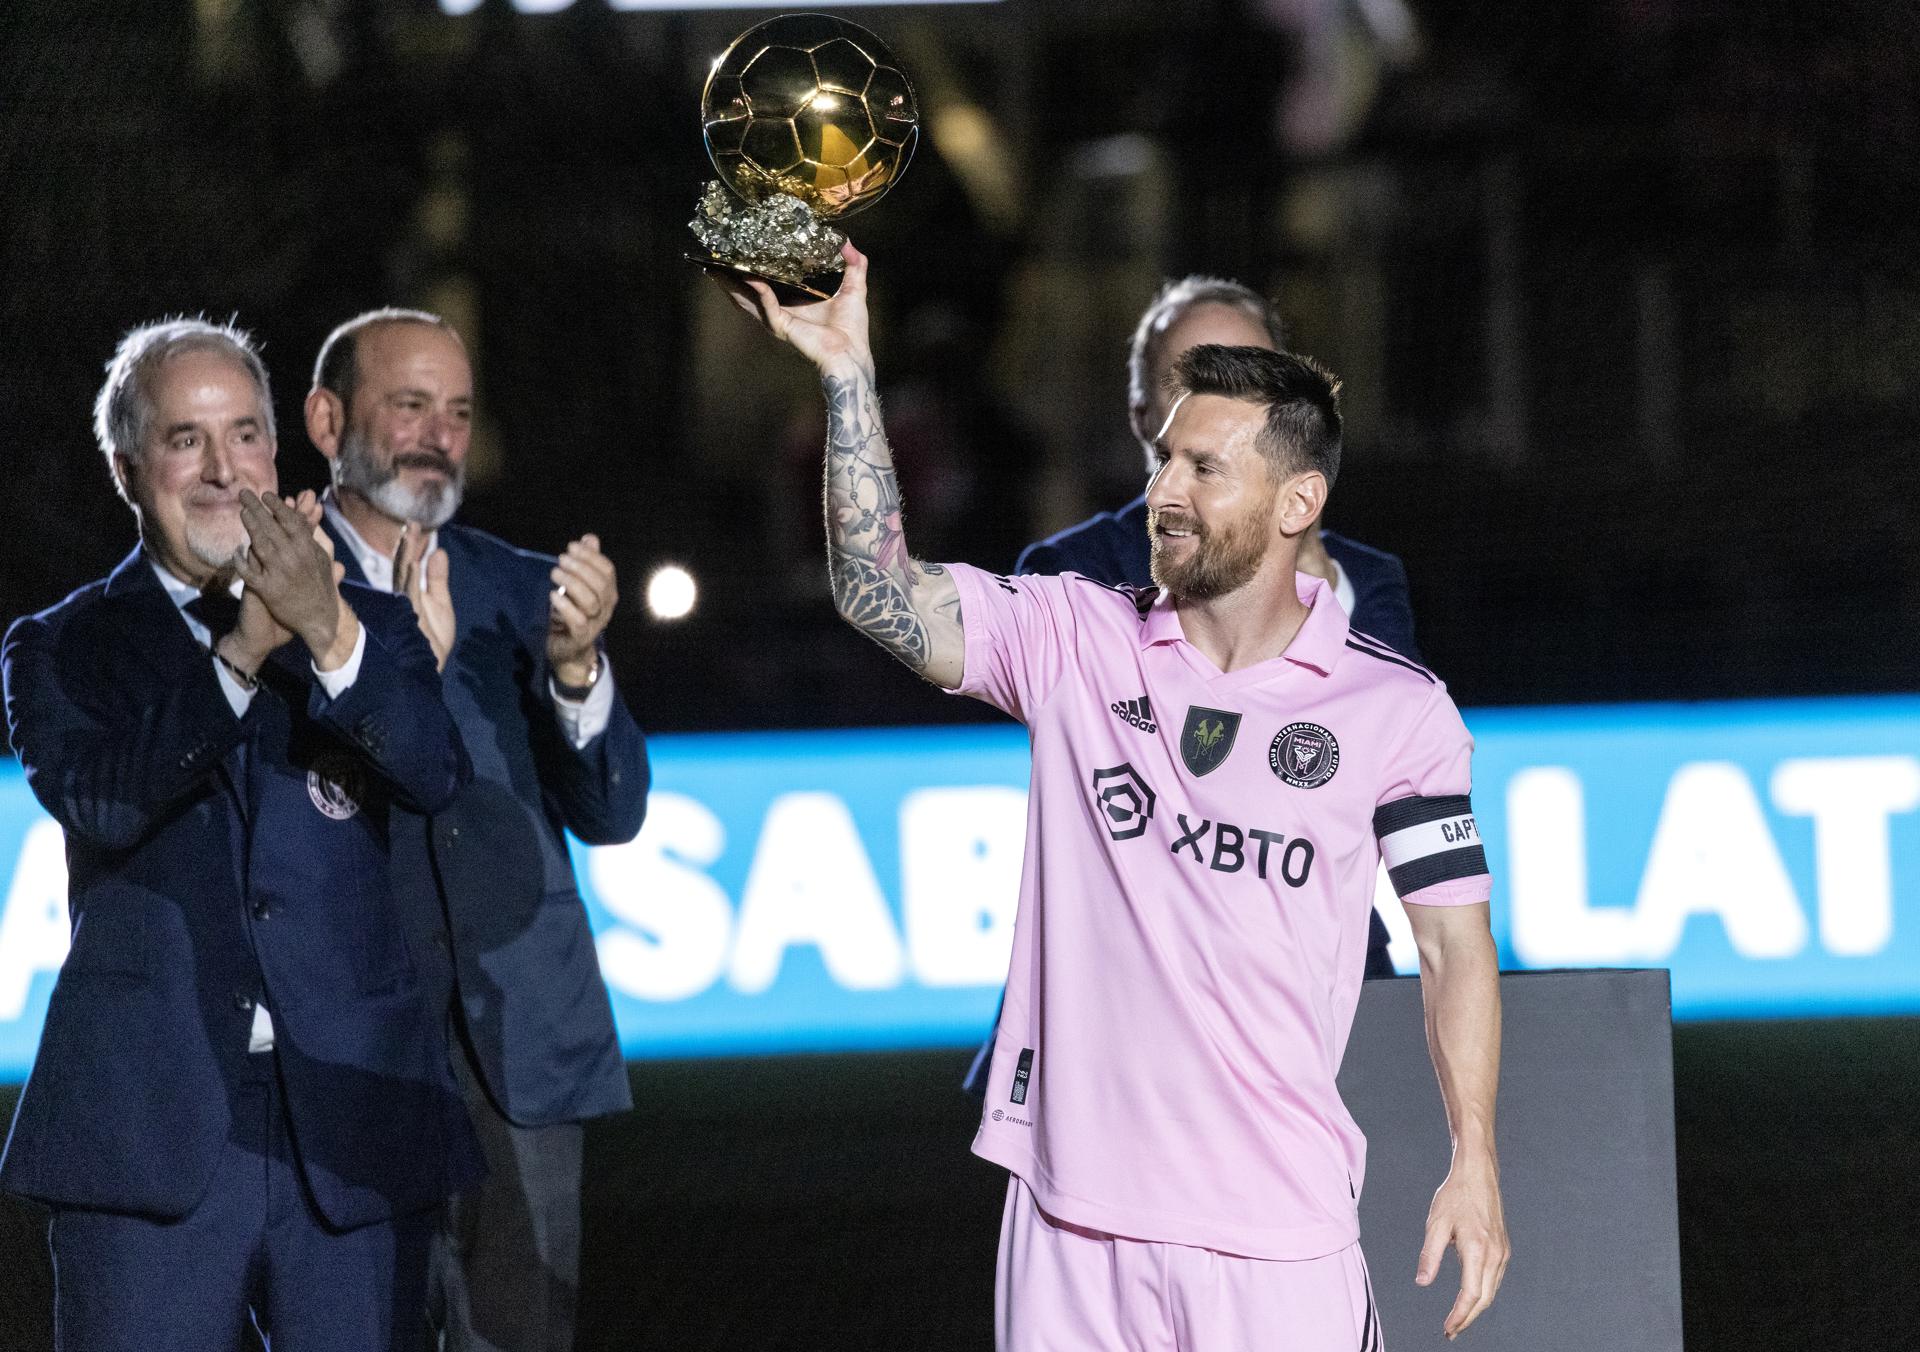 Messi prometió más éxitos en su noche dorada: "El año que viene va a ser mucho mejor"